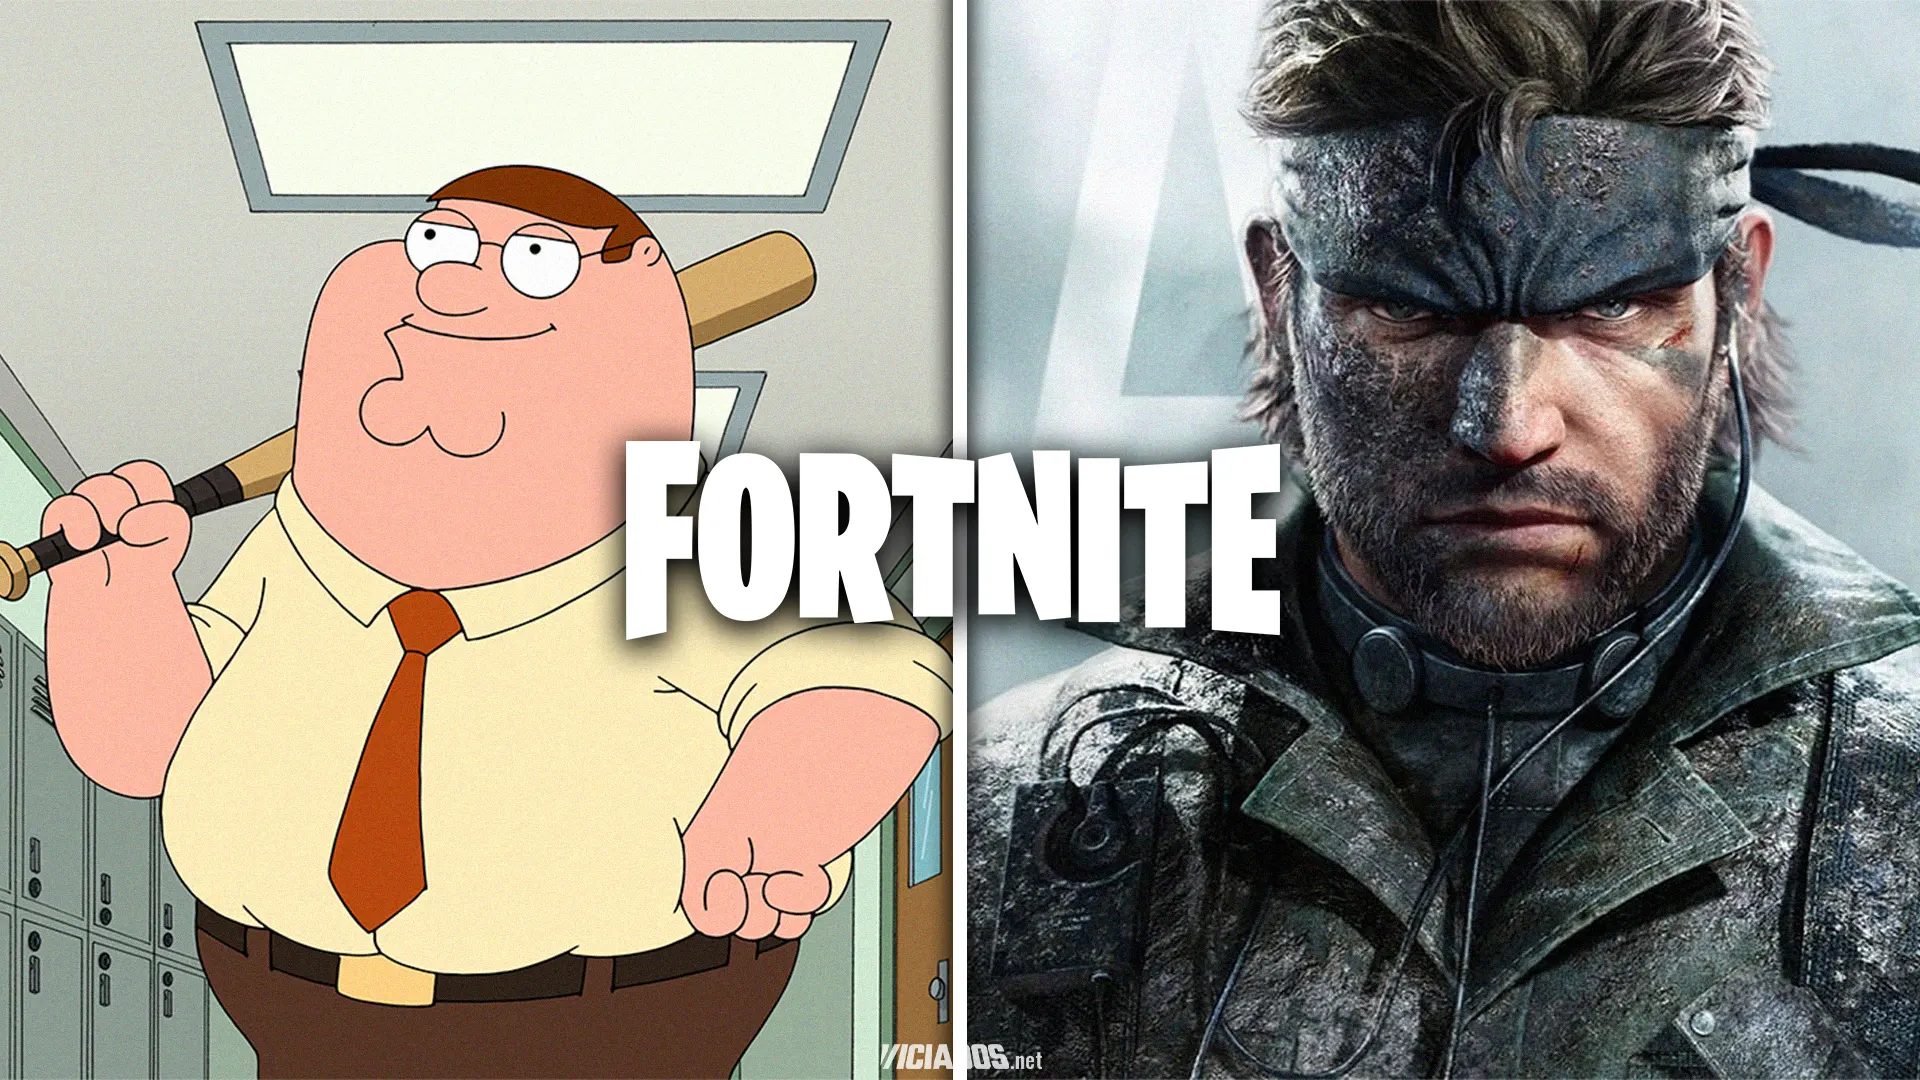 Fortnite | Nova temporada mistura Family Guy com Metal Gear Solid 2024 Portal Viciados